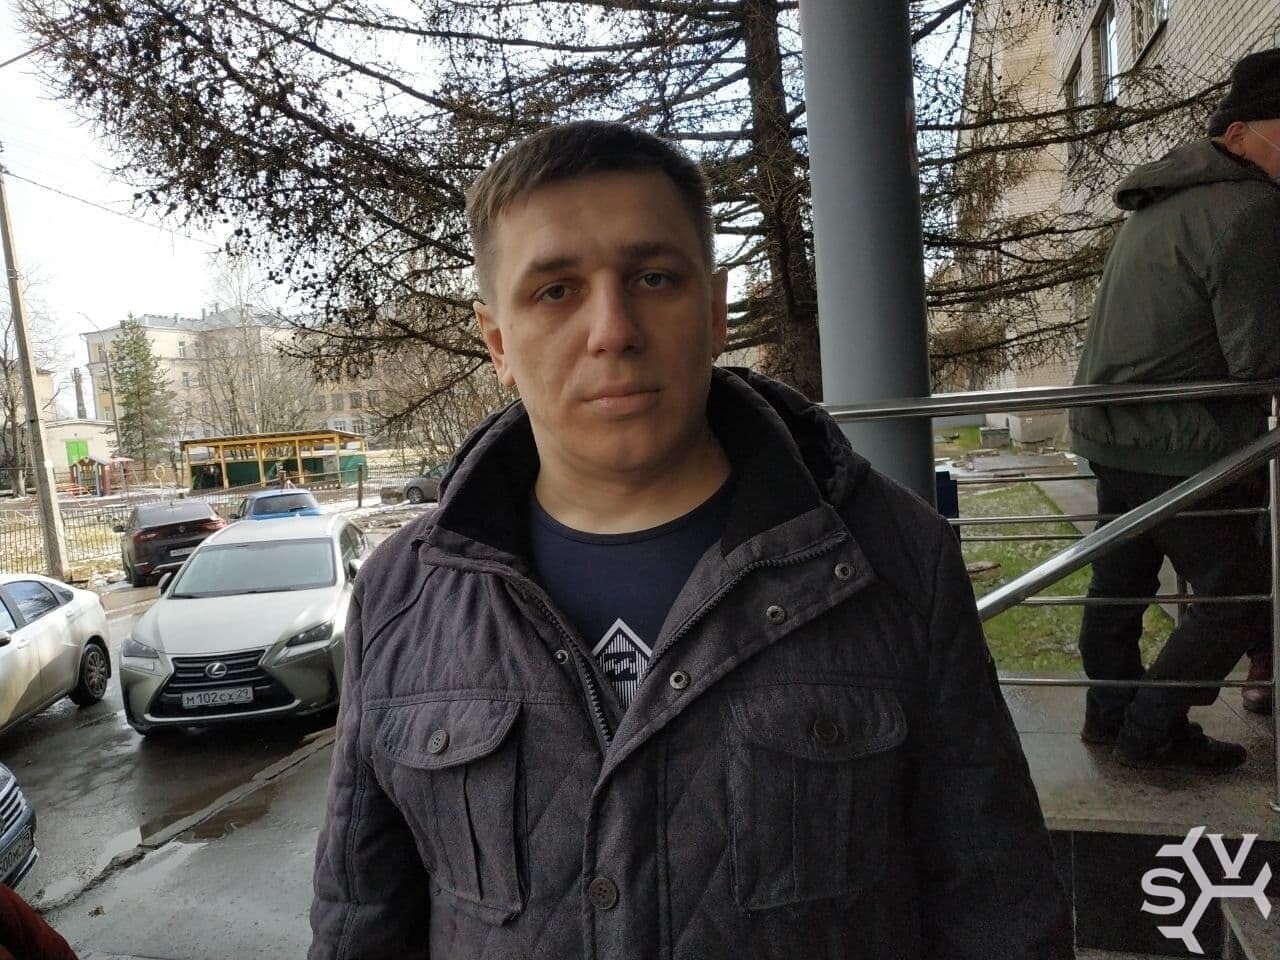 Областной суд повторно рассмотрит апелляцию на дело Боровикова 15 марта 